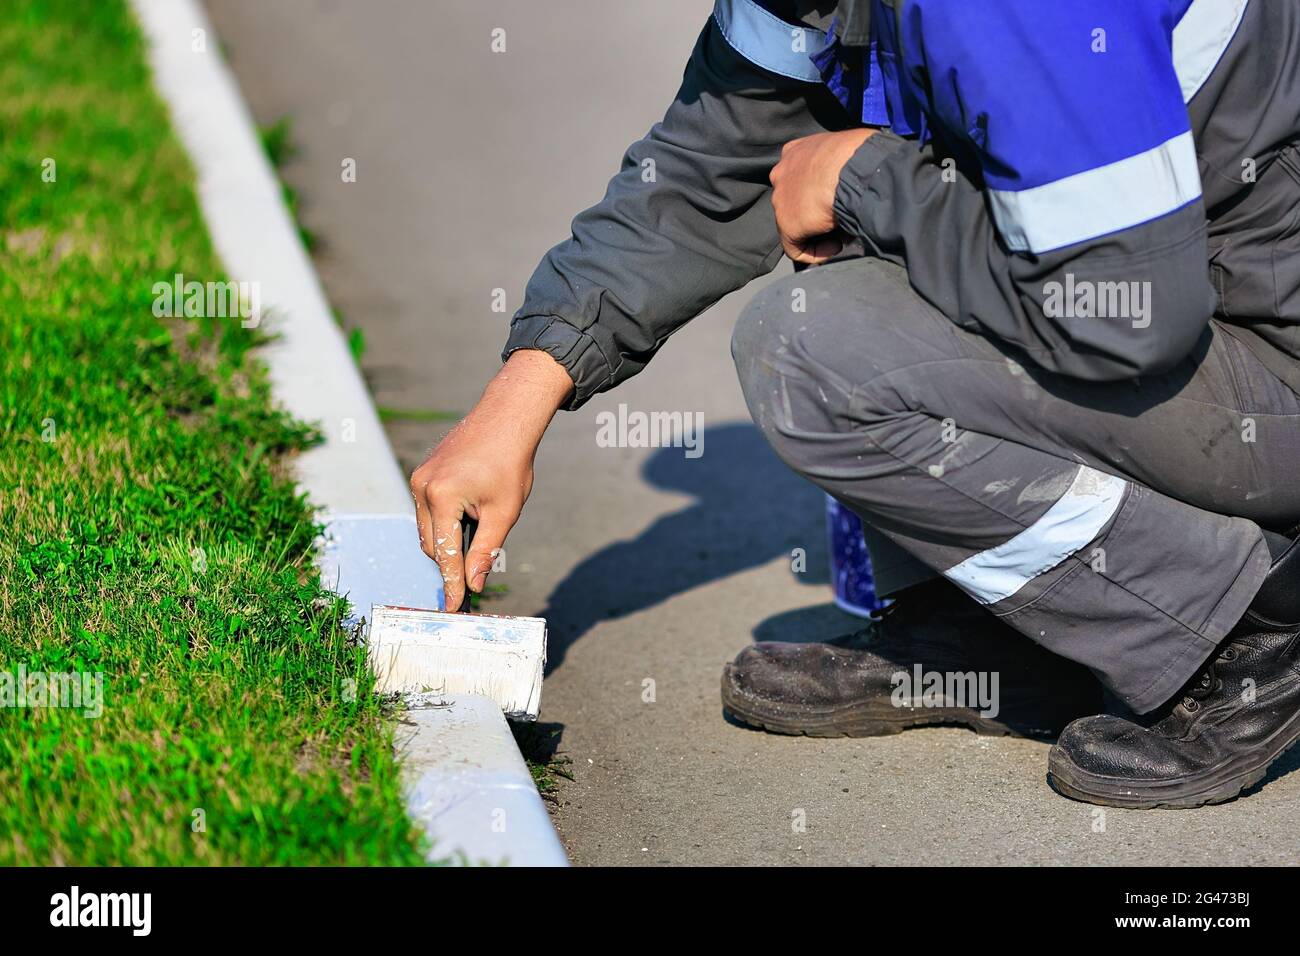 Un lavoratore in tute dipinge un bordo con vernice bianca in una giornata estiva. Servizi urbani, architettura paesaggistica. Foto Stock